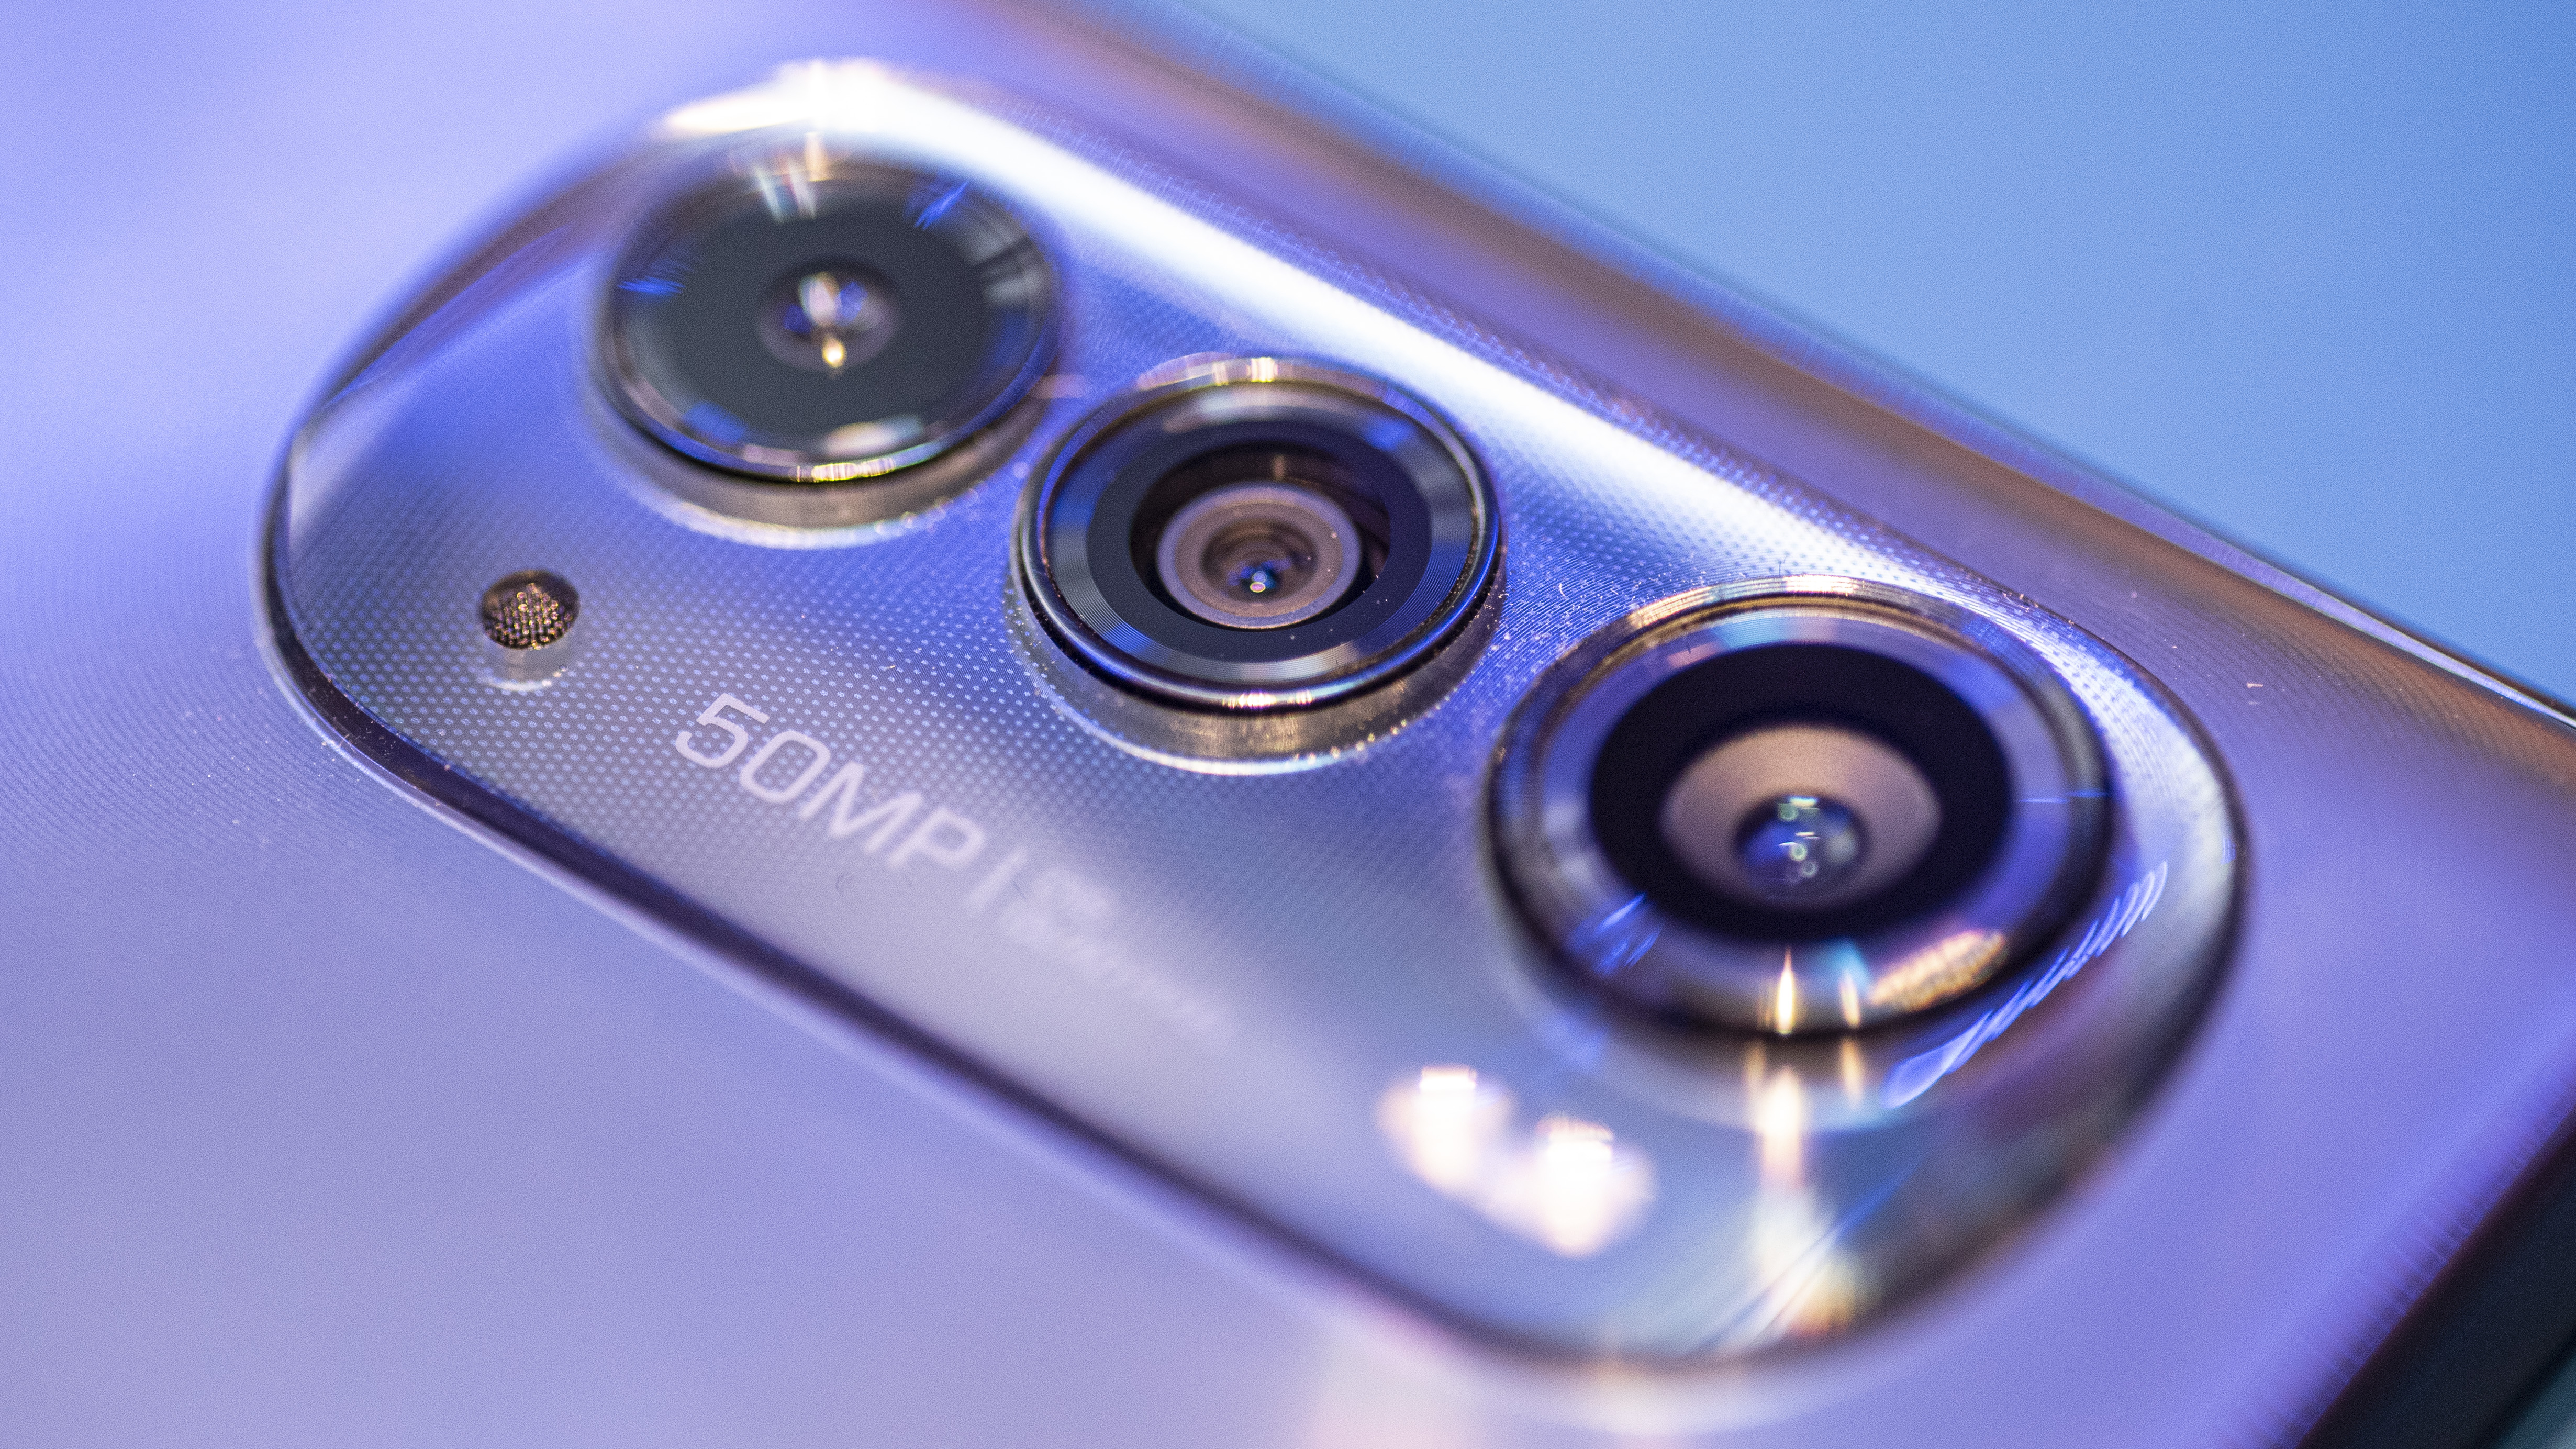 Motorola Edge 2022 fecha a câmera e os botões